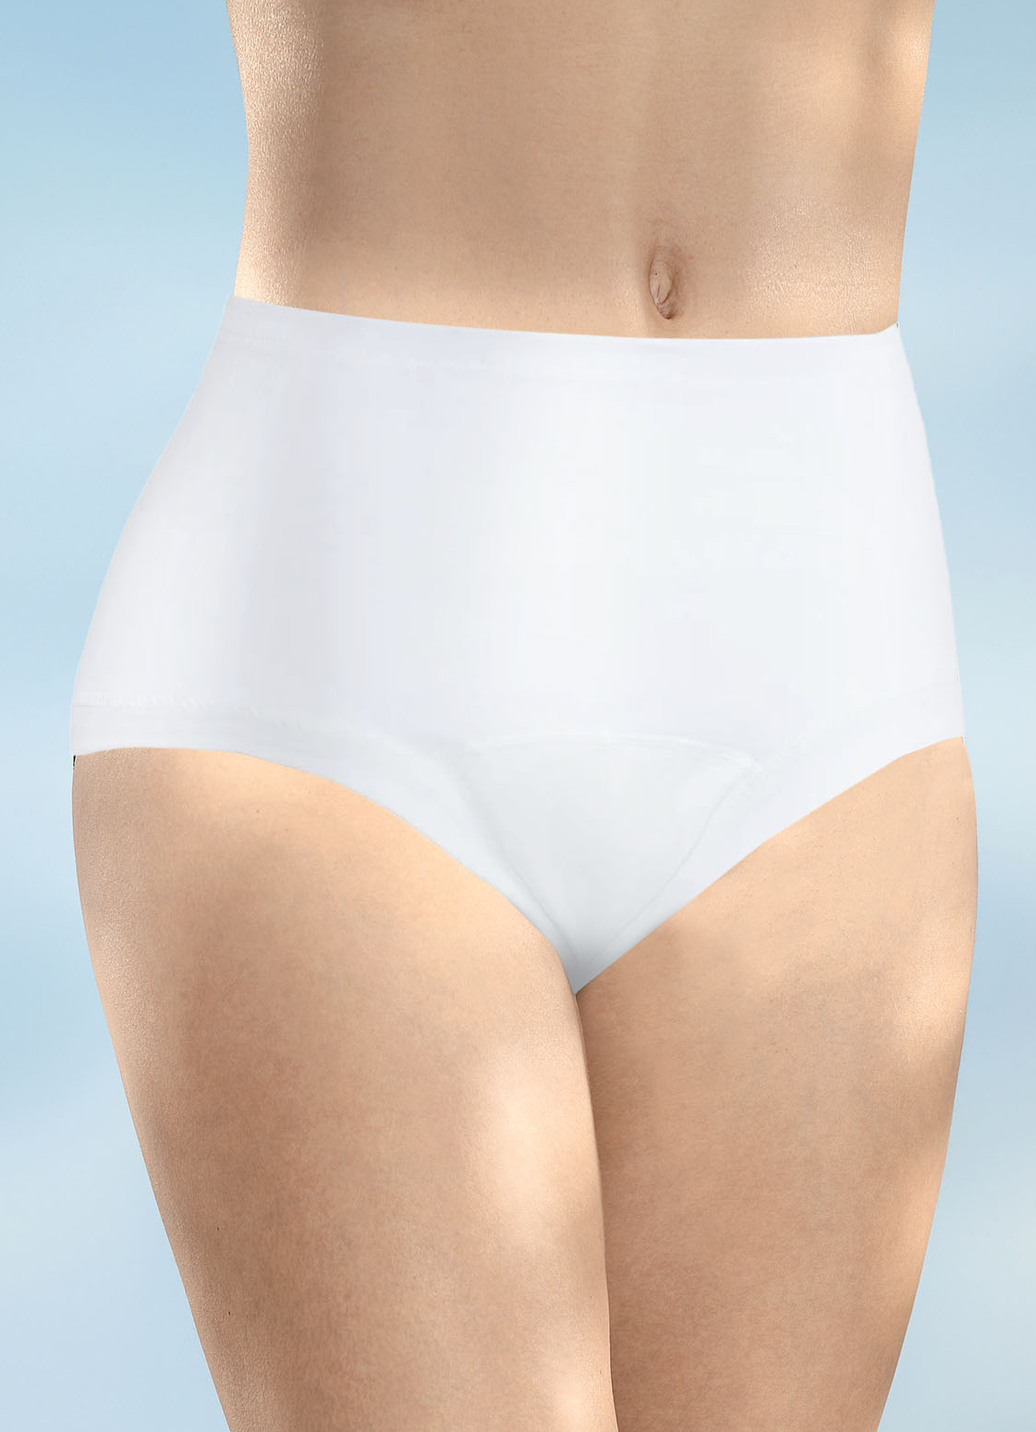 Damen Inkontinenz Taillenslip mit Auslaufschutz von Con-ta, Taillenslip, Größe 3 (46/48), Weiss von CON-TA